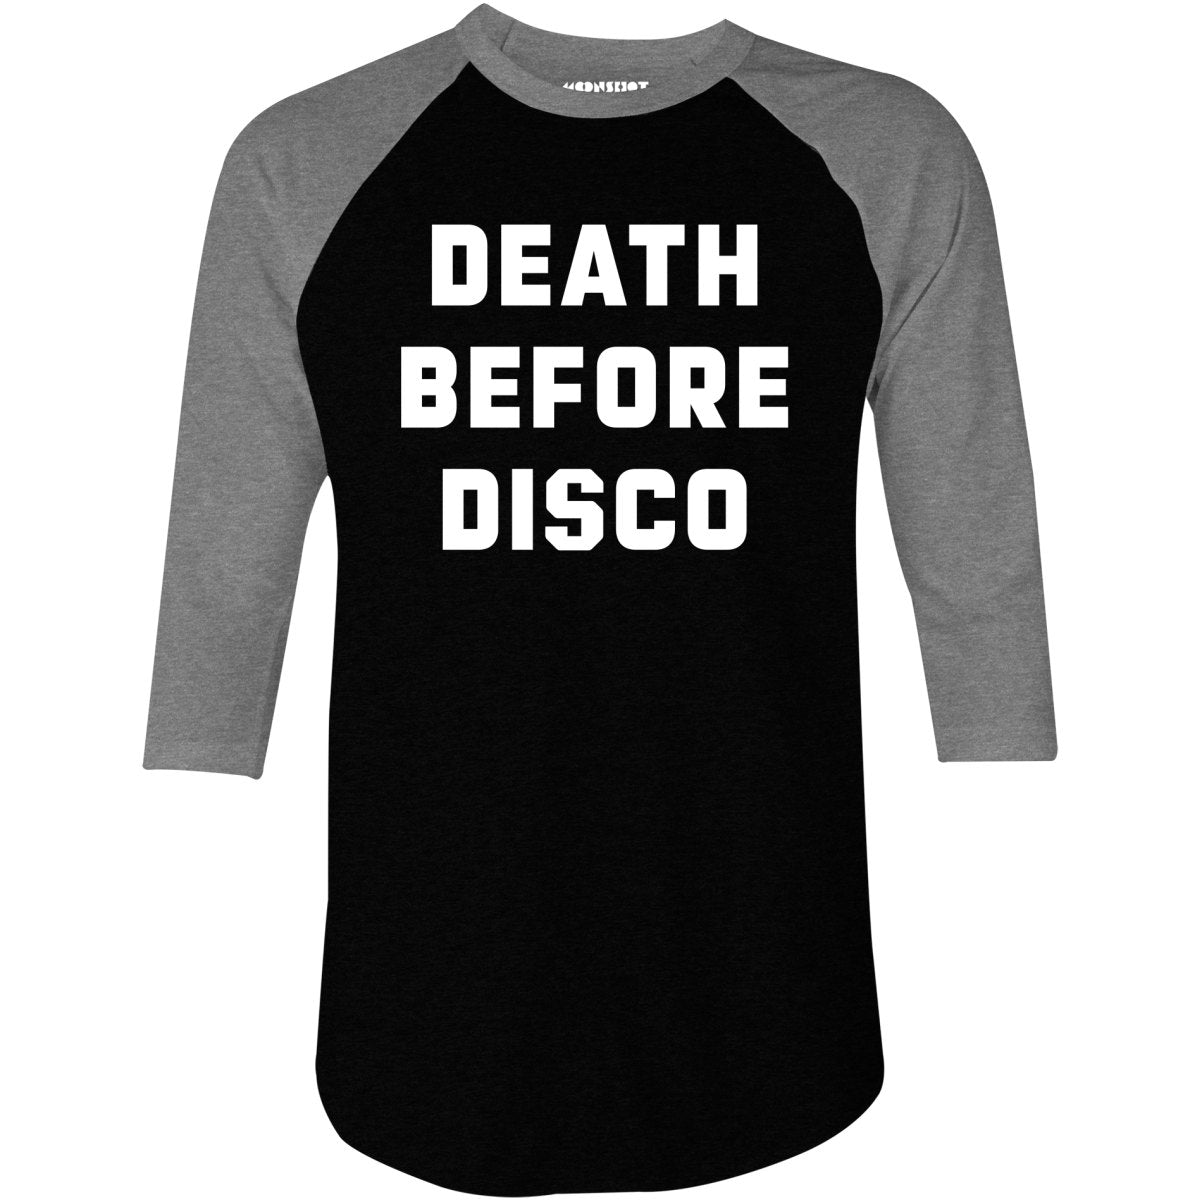 Death Before Disco - 3/4 Sleeve Raglan T-Shirt